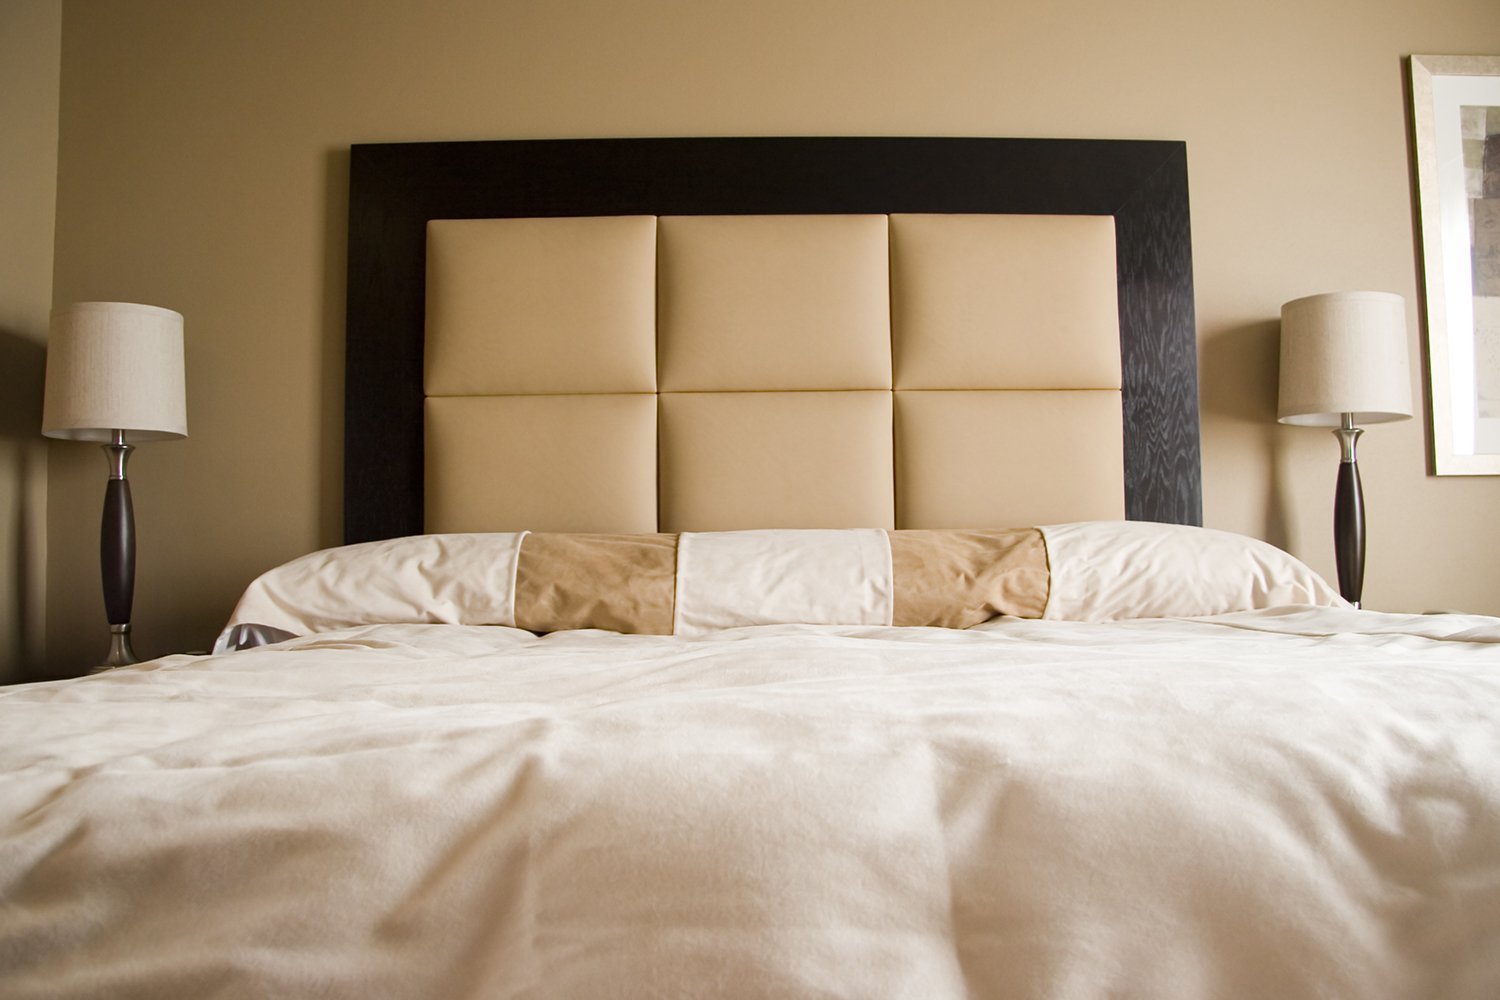 Бывают ли кровати. Кровать с красивым изголовьем. Кровать в интерьере. Кровать в интерьере спальни. Кровать с мягким изголовьем.